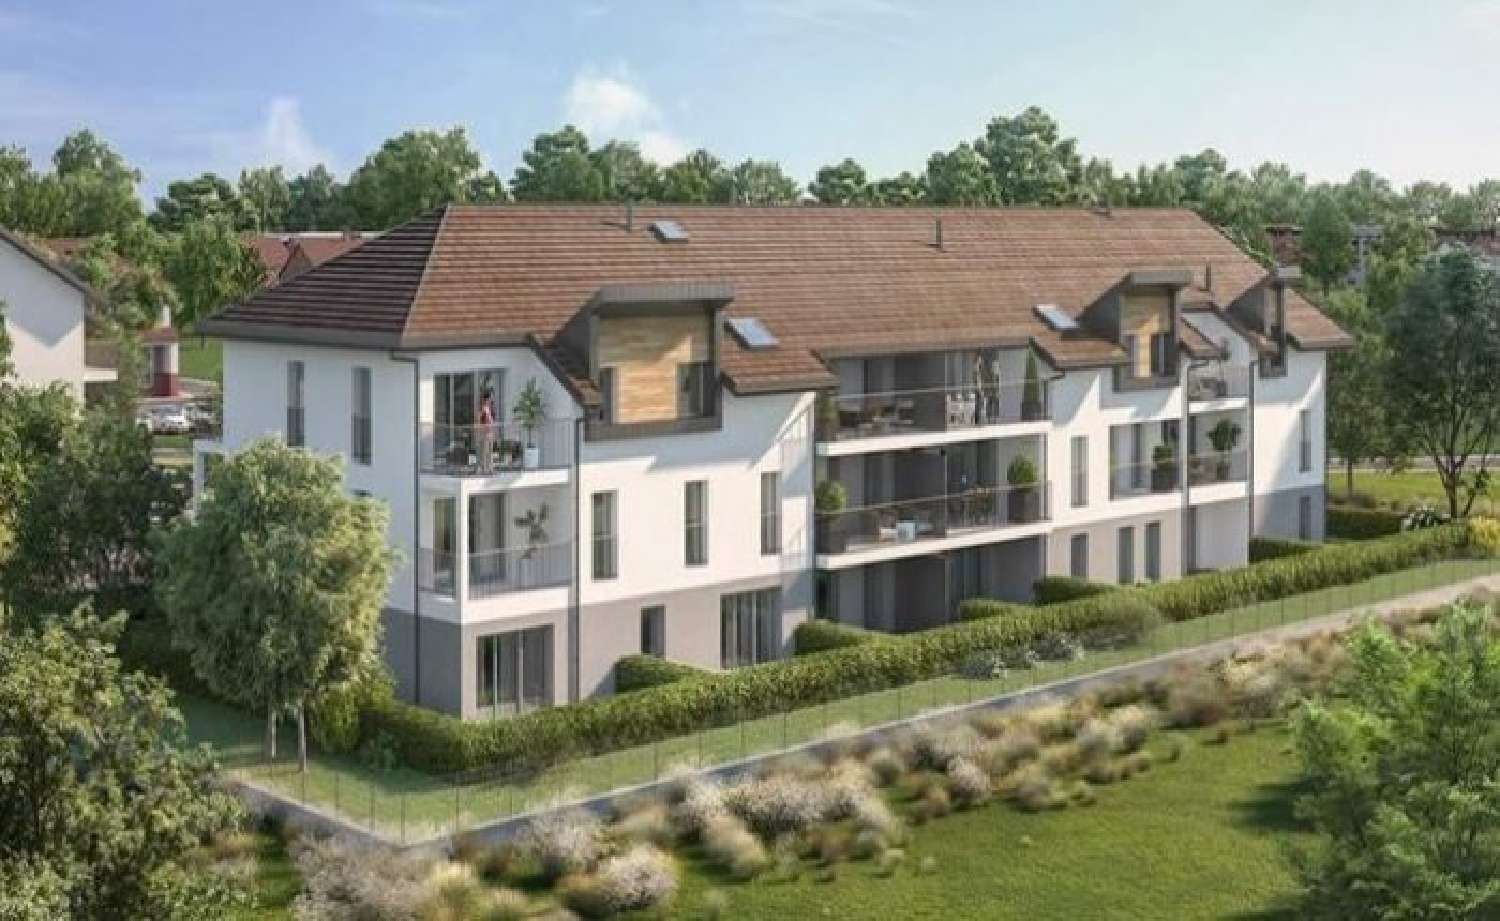 Arenthon Haute-Savoie Wohnung/ Apartment Bild 6825208